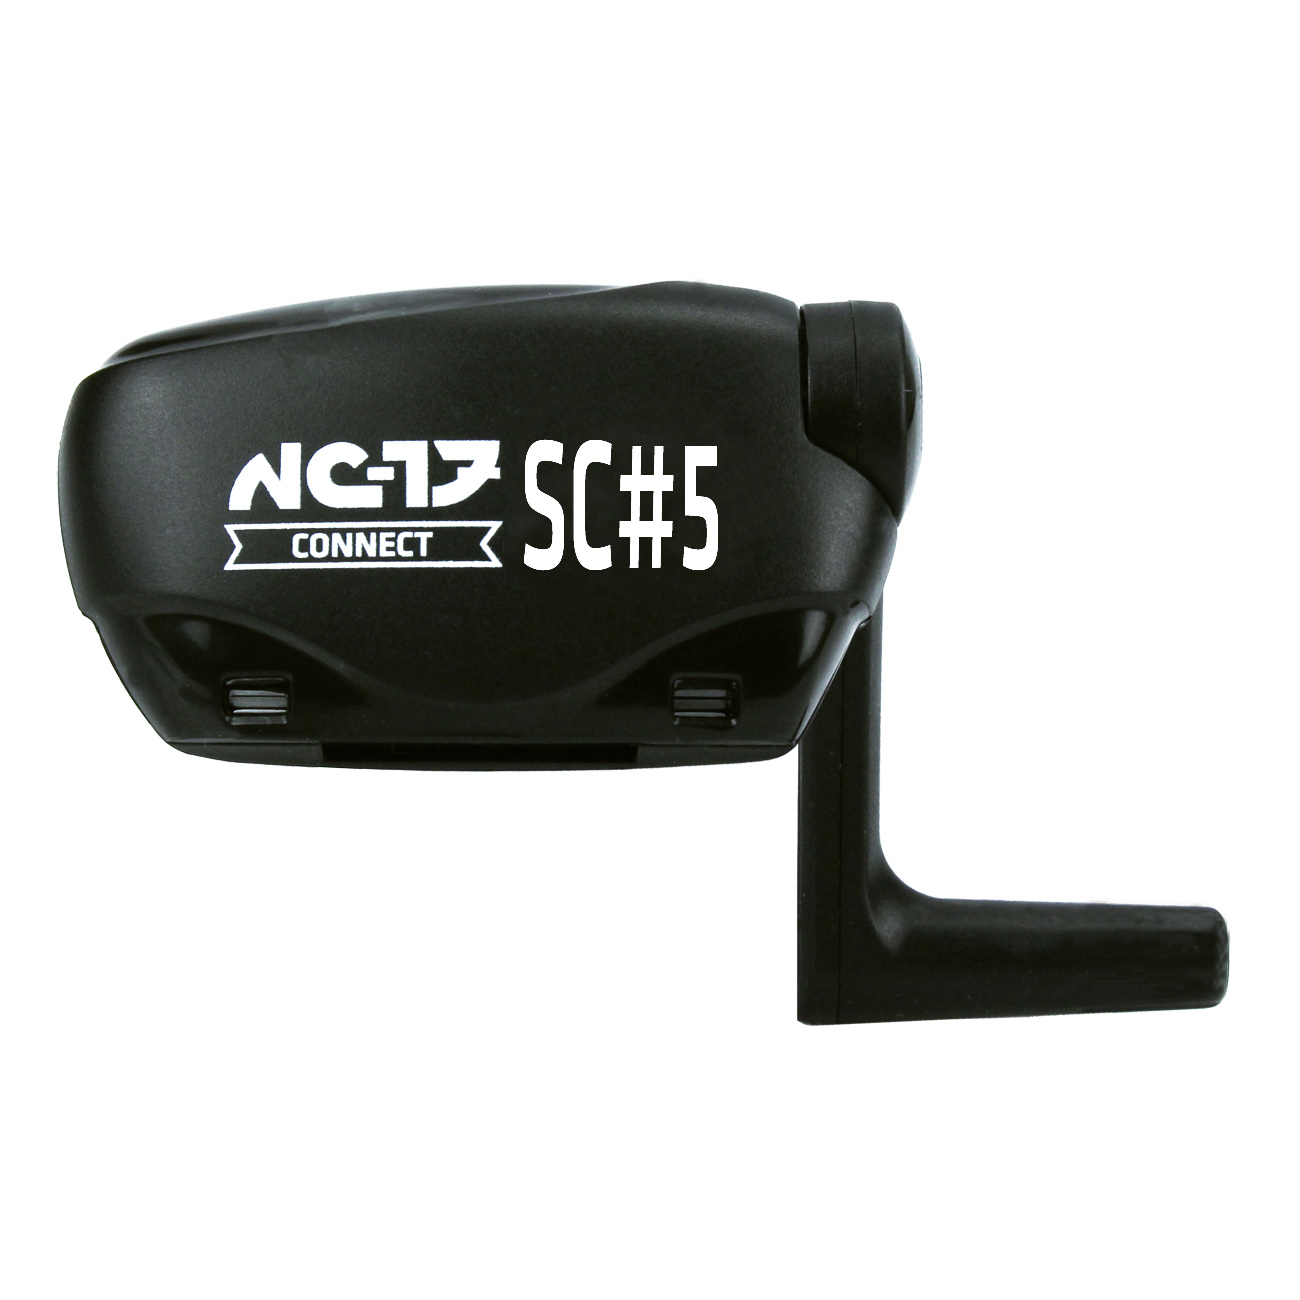 NC-17 Connect SC#5 Speed u. Trittfrequenz<br/>ANT+ und Bluetooth 4.0<br/>  